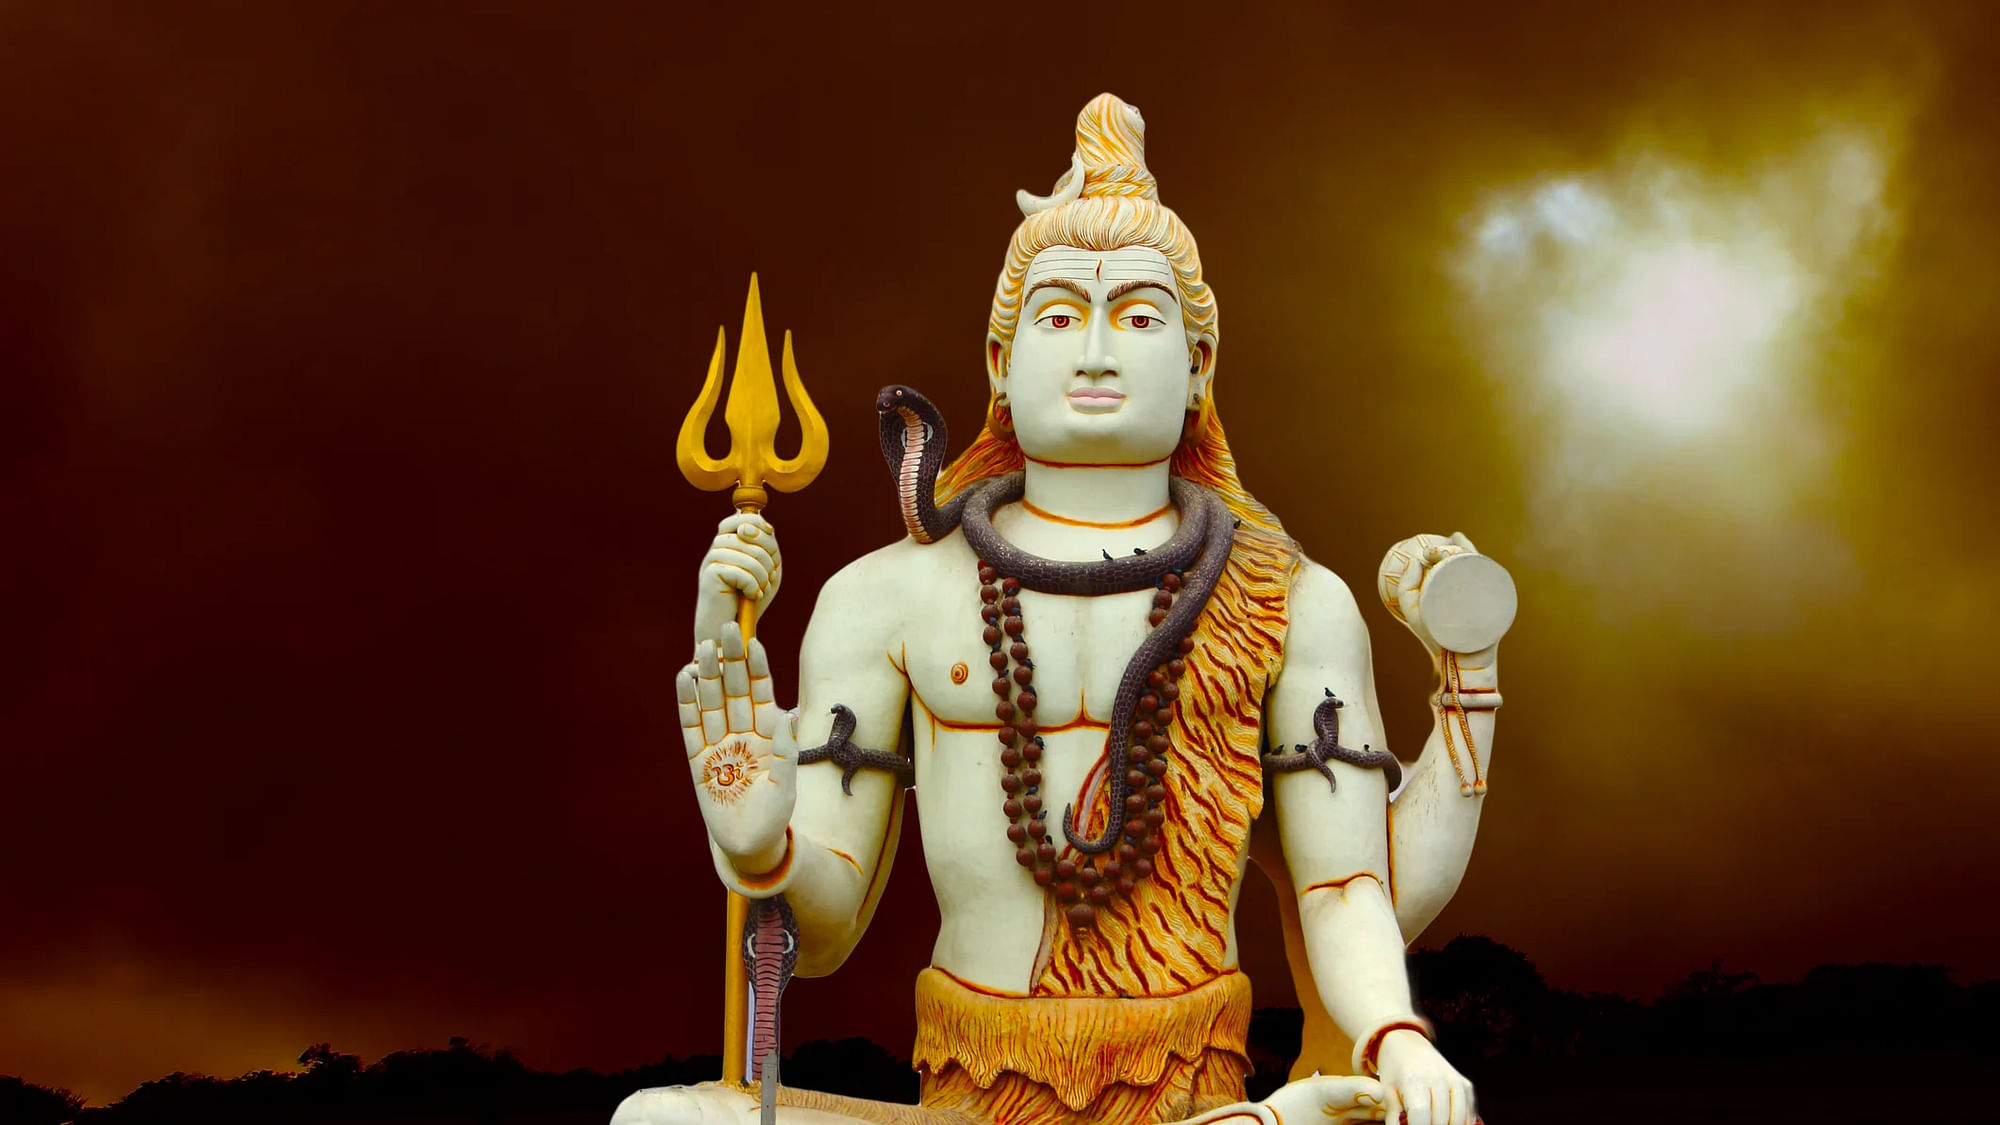 Happy Maha Shivaratri 2020 Wishes, Images with Quotes: महाशिवरात्रि पर भेंजे अपनों को बधाई.